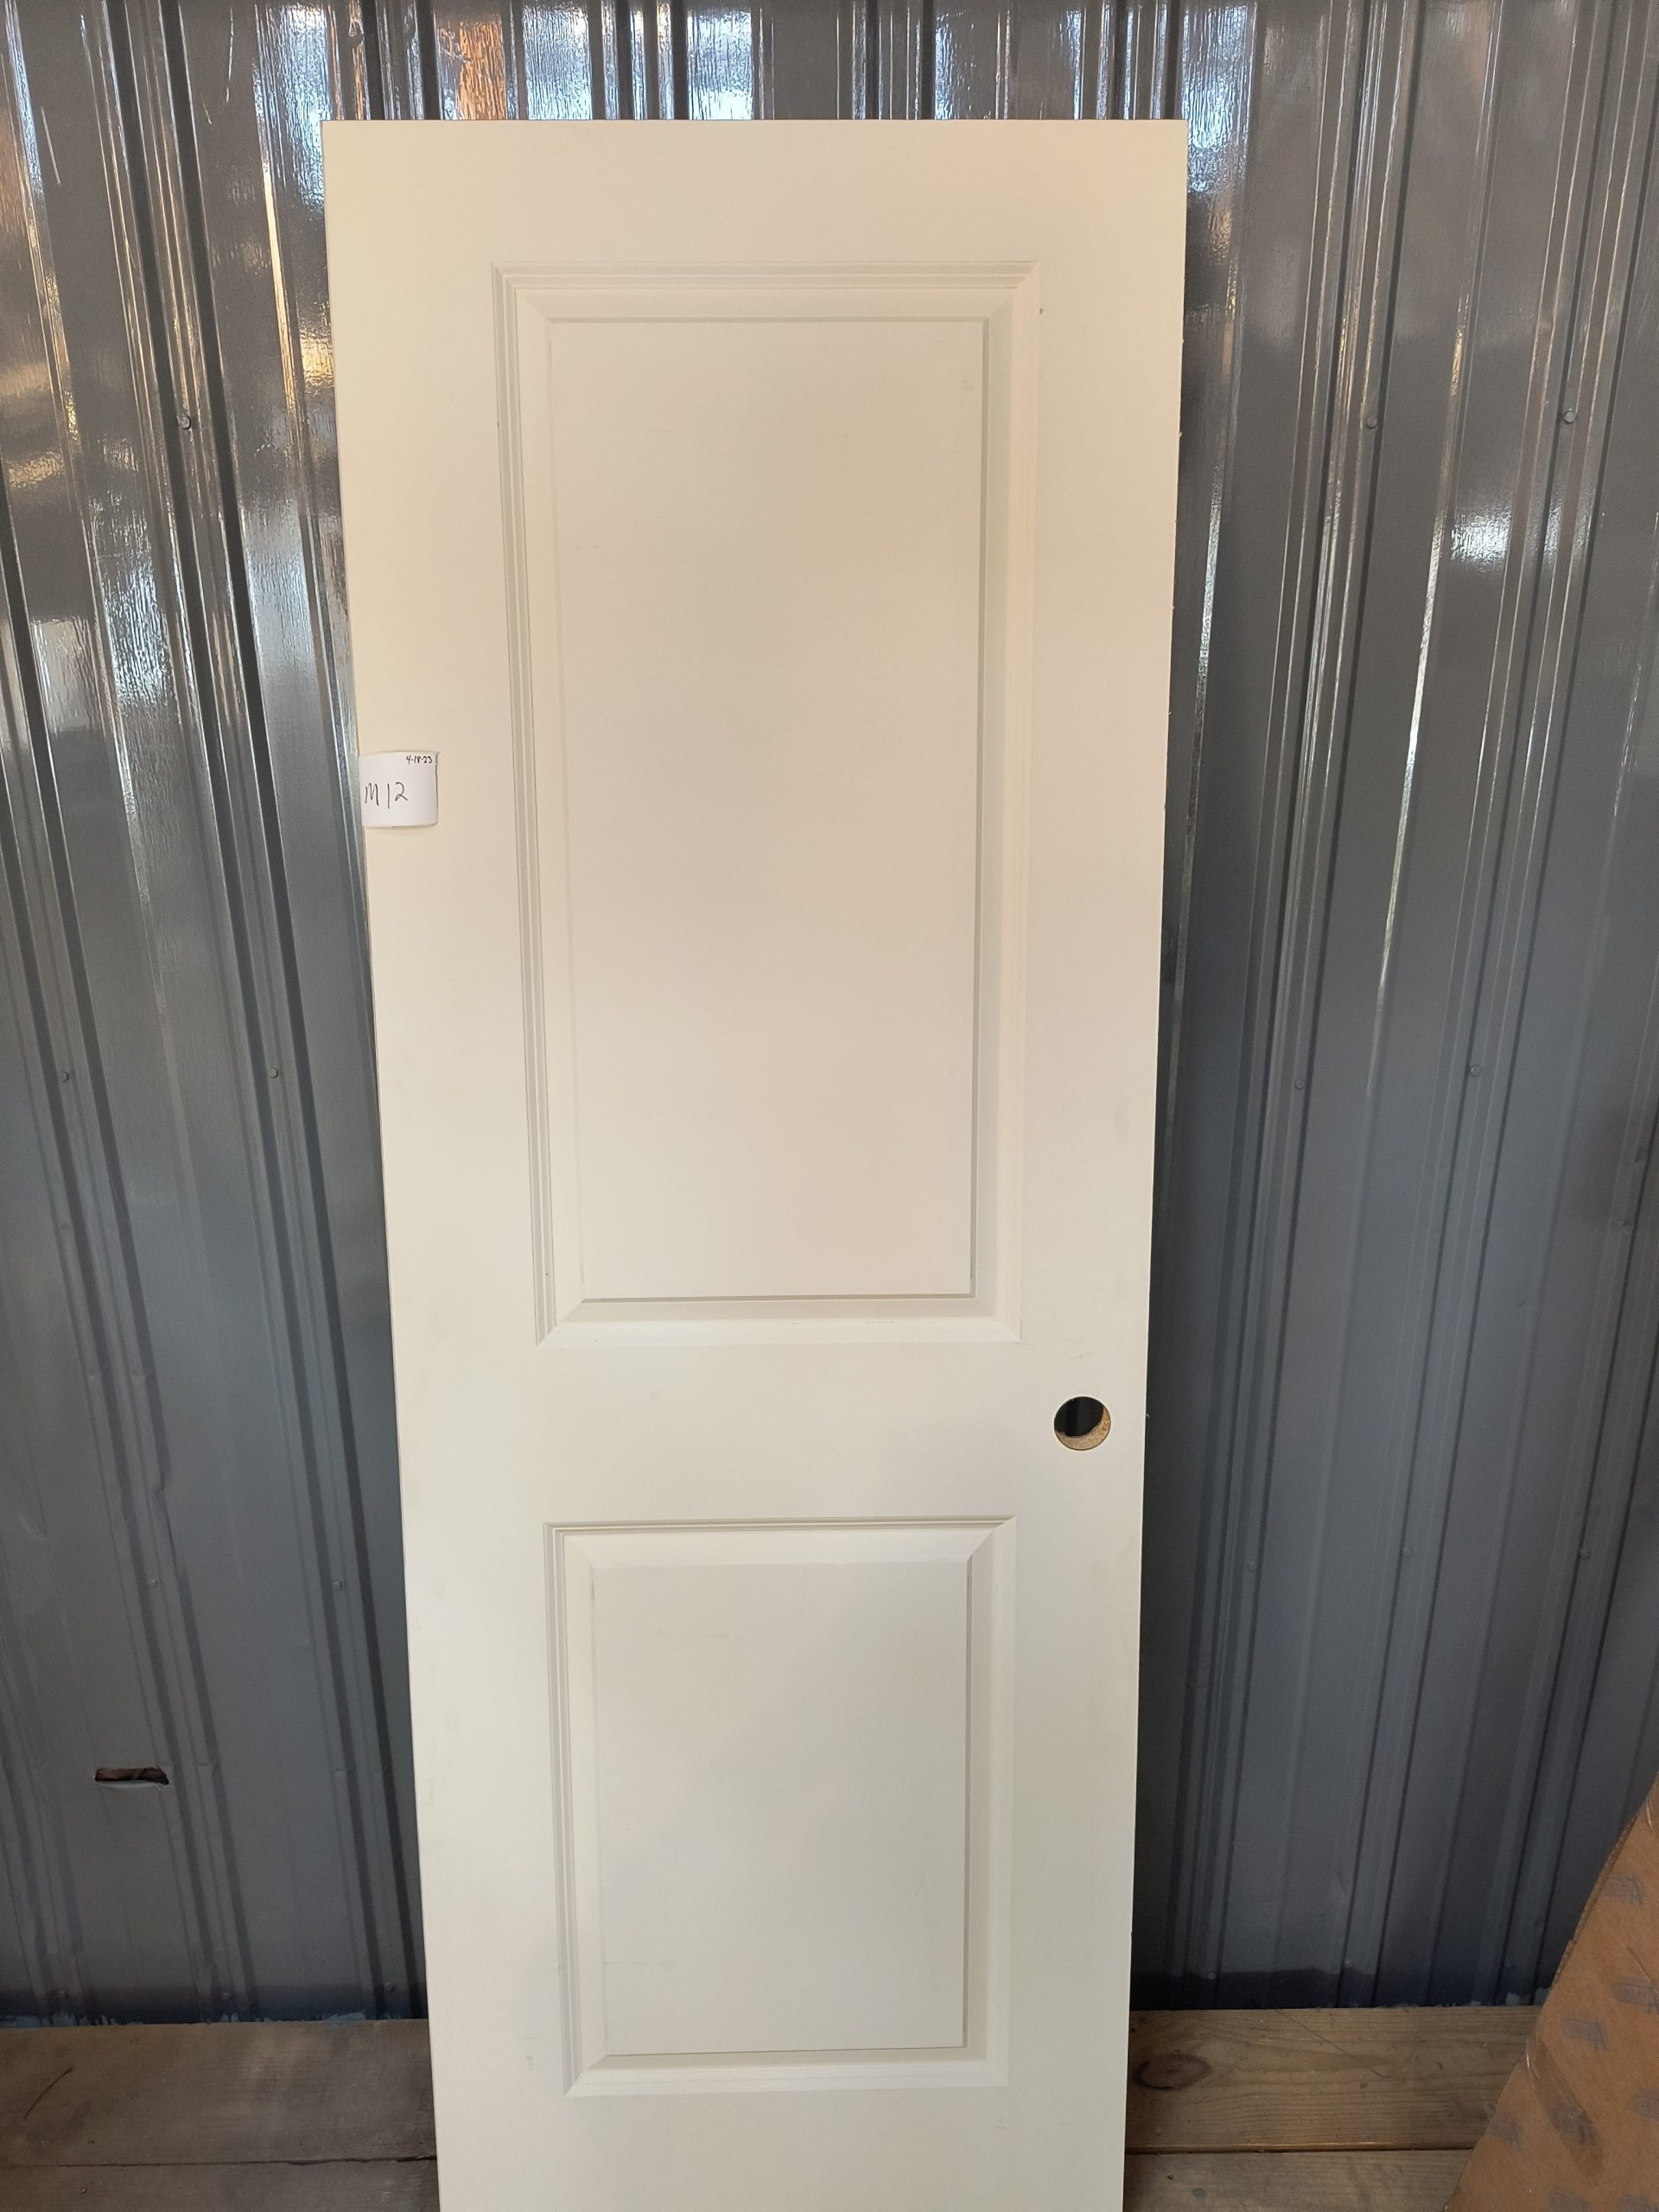 Hollow Slab Door - M12